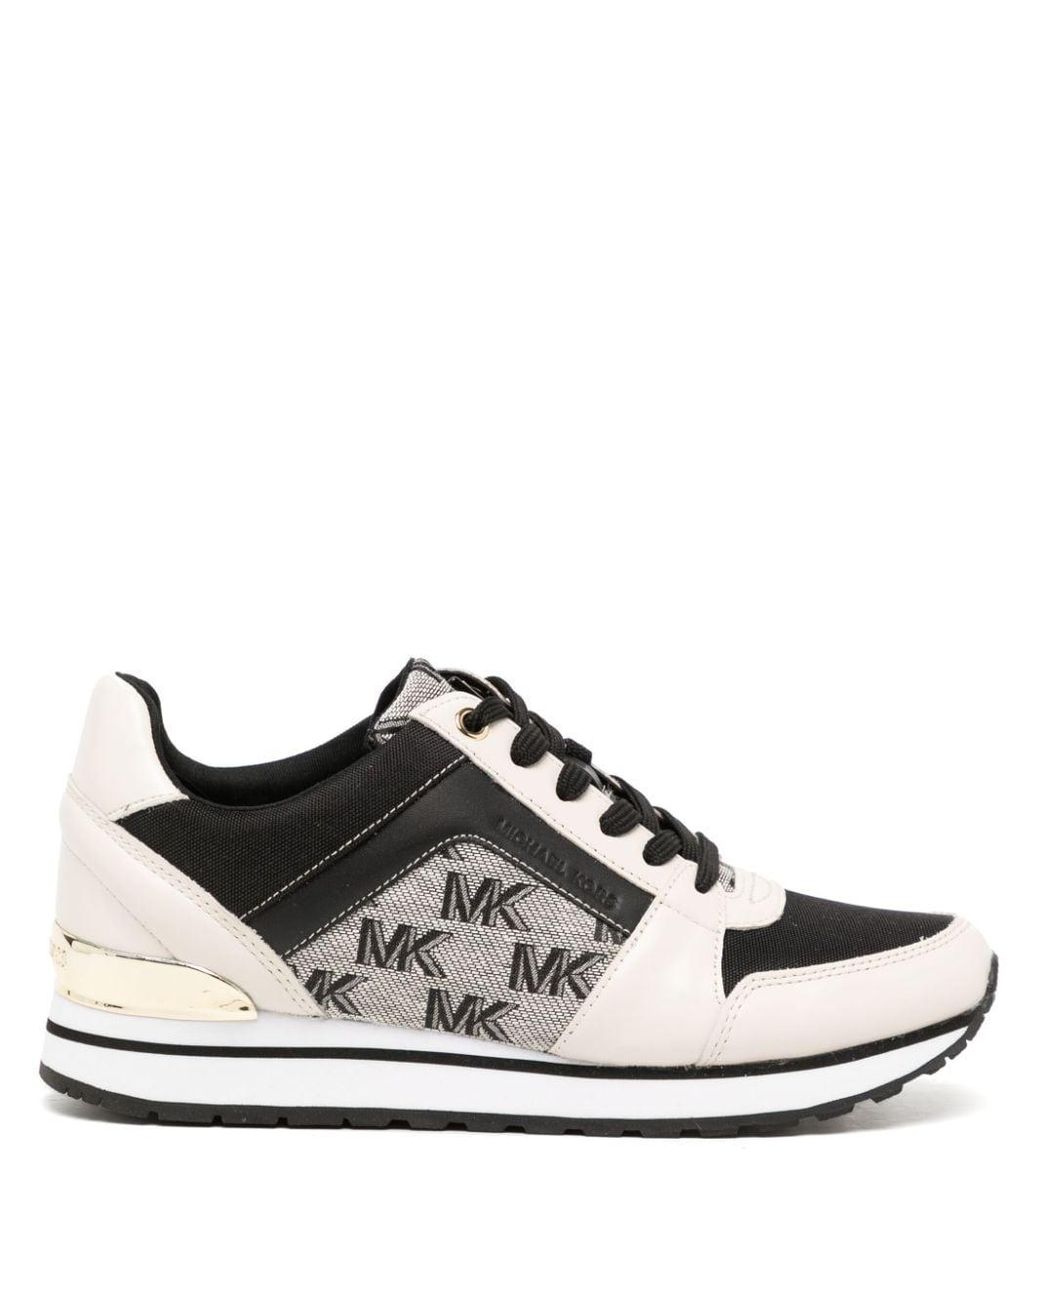 Michael Kors Billie Monogram-print Sneakers in White | Lyst